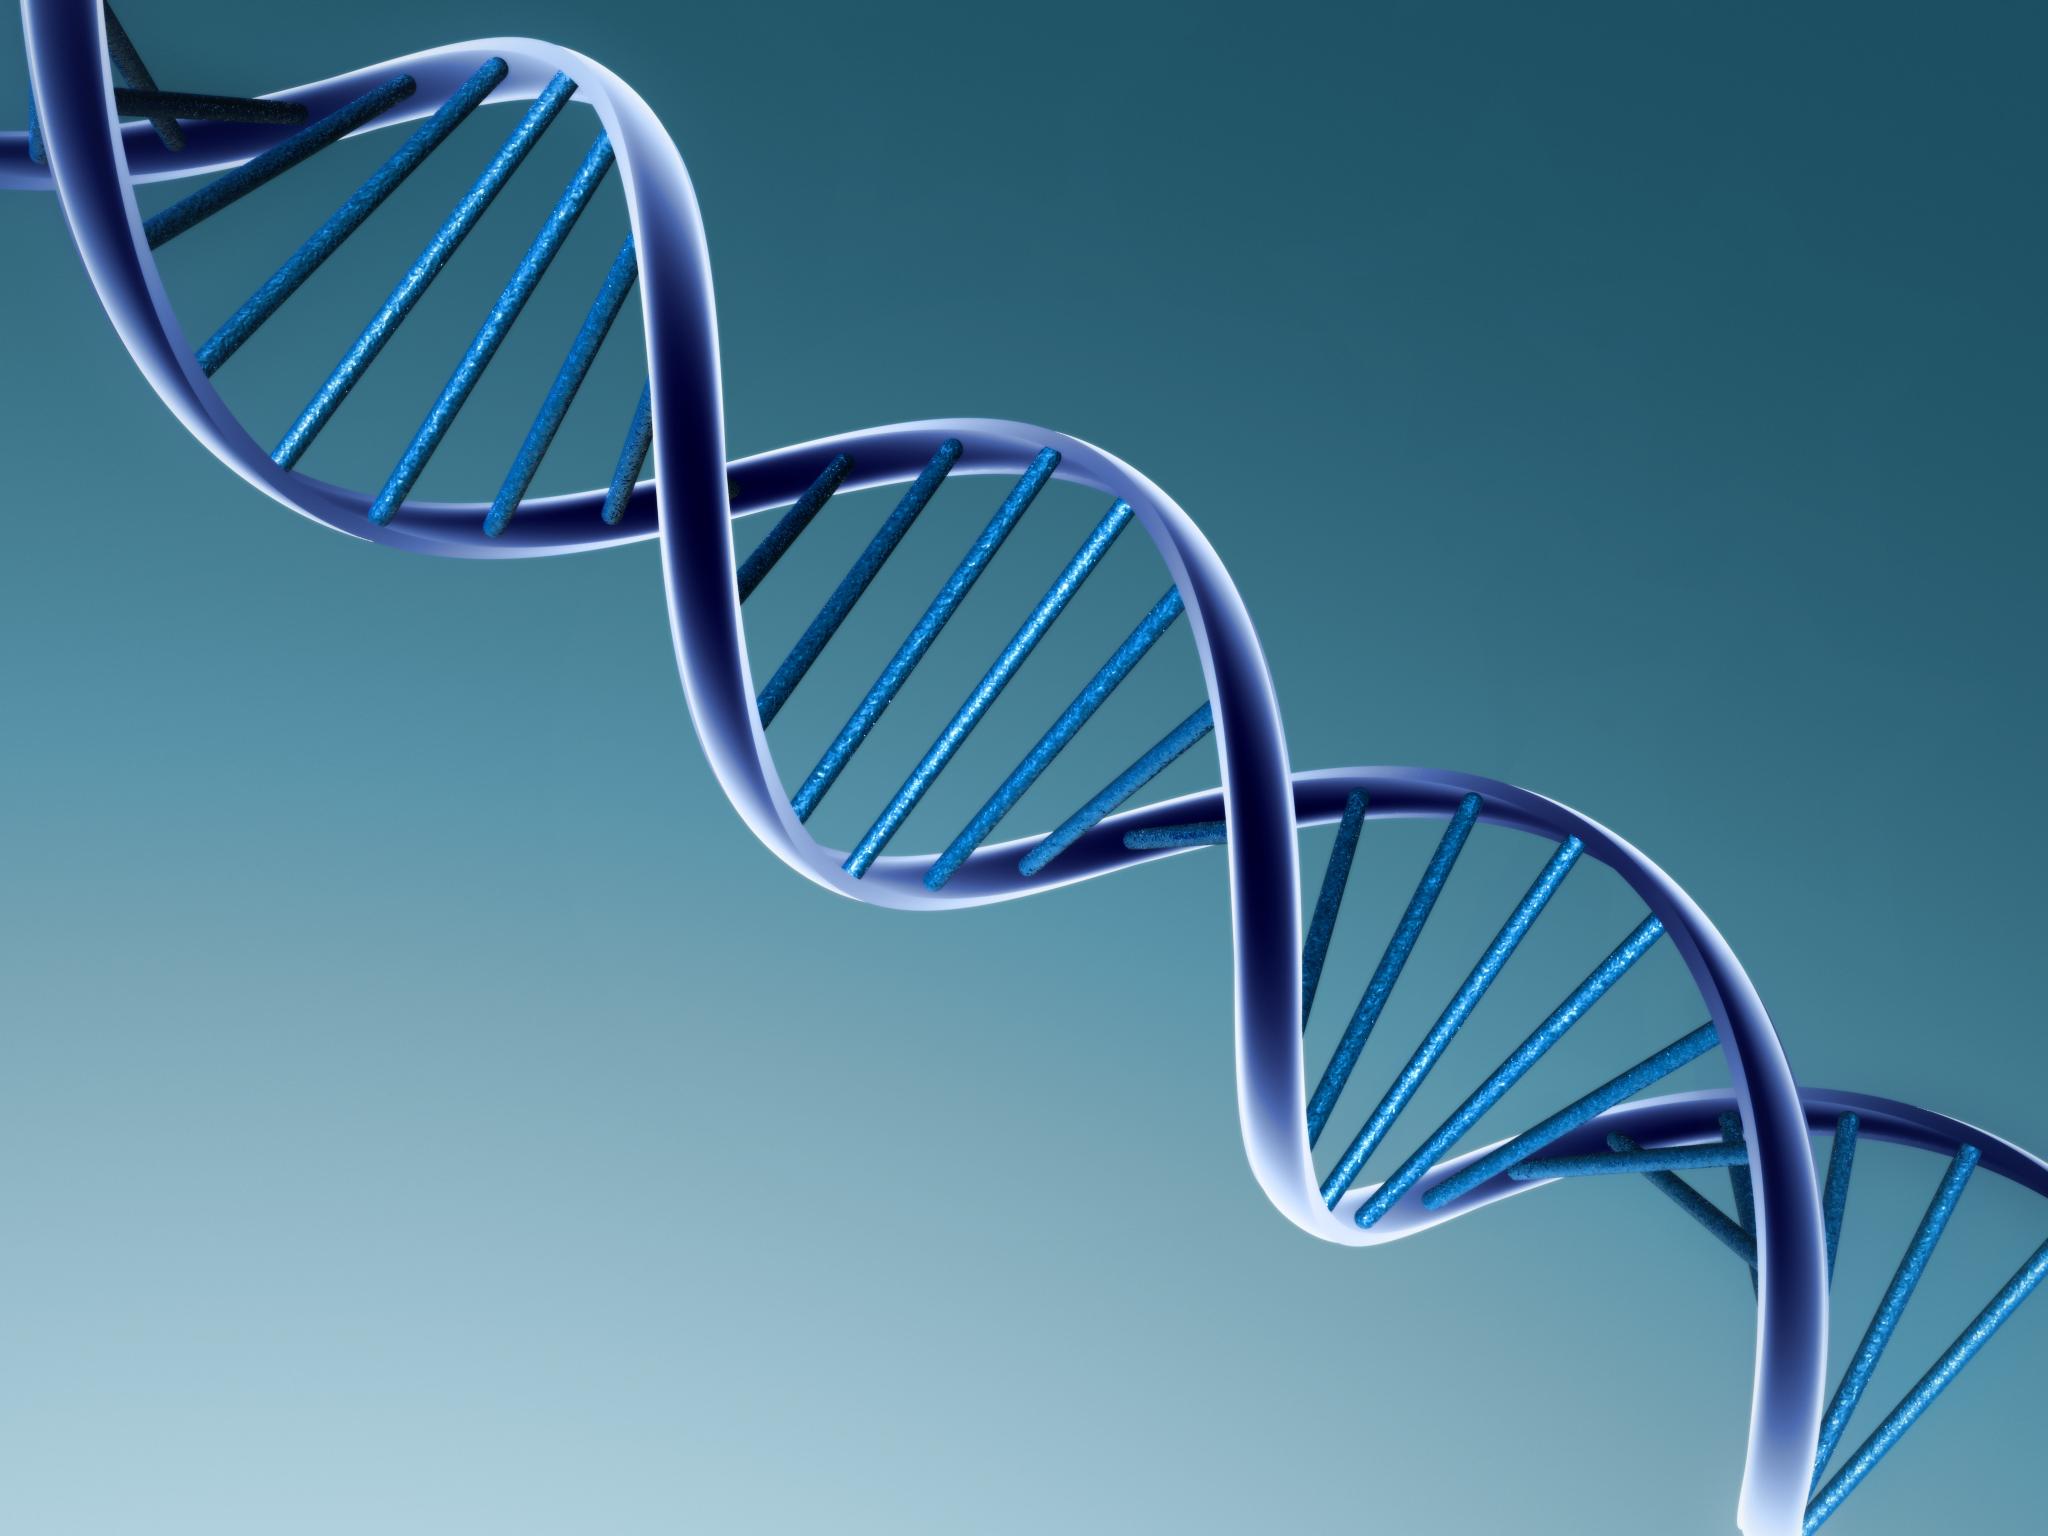 Artigo – Aconselhamento genético como aliado nos diagnósticos médicos